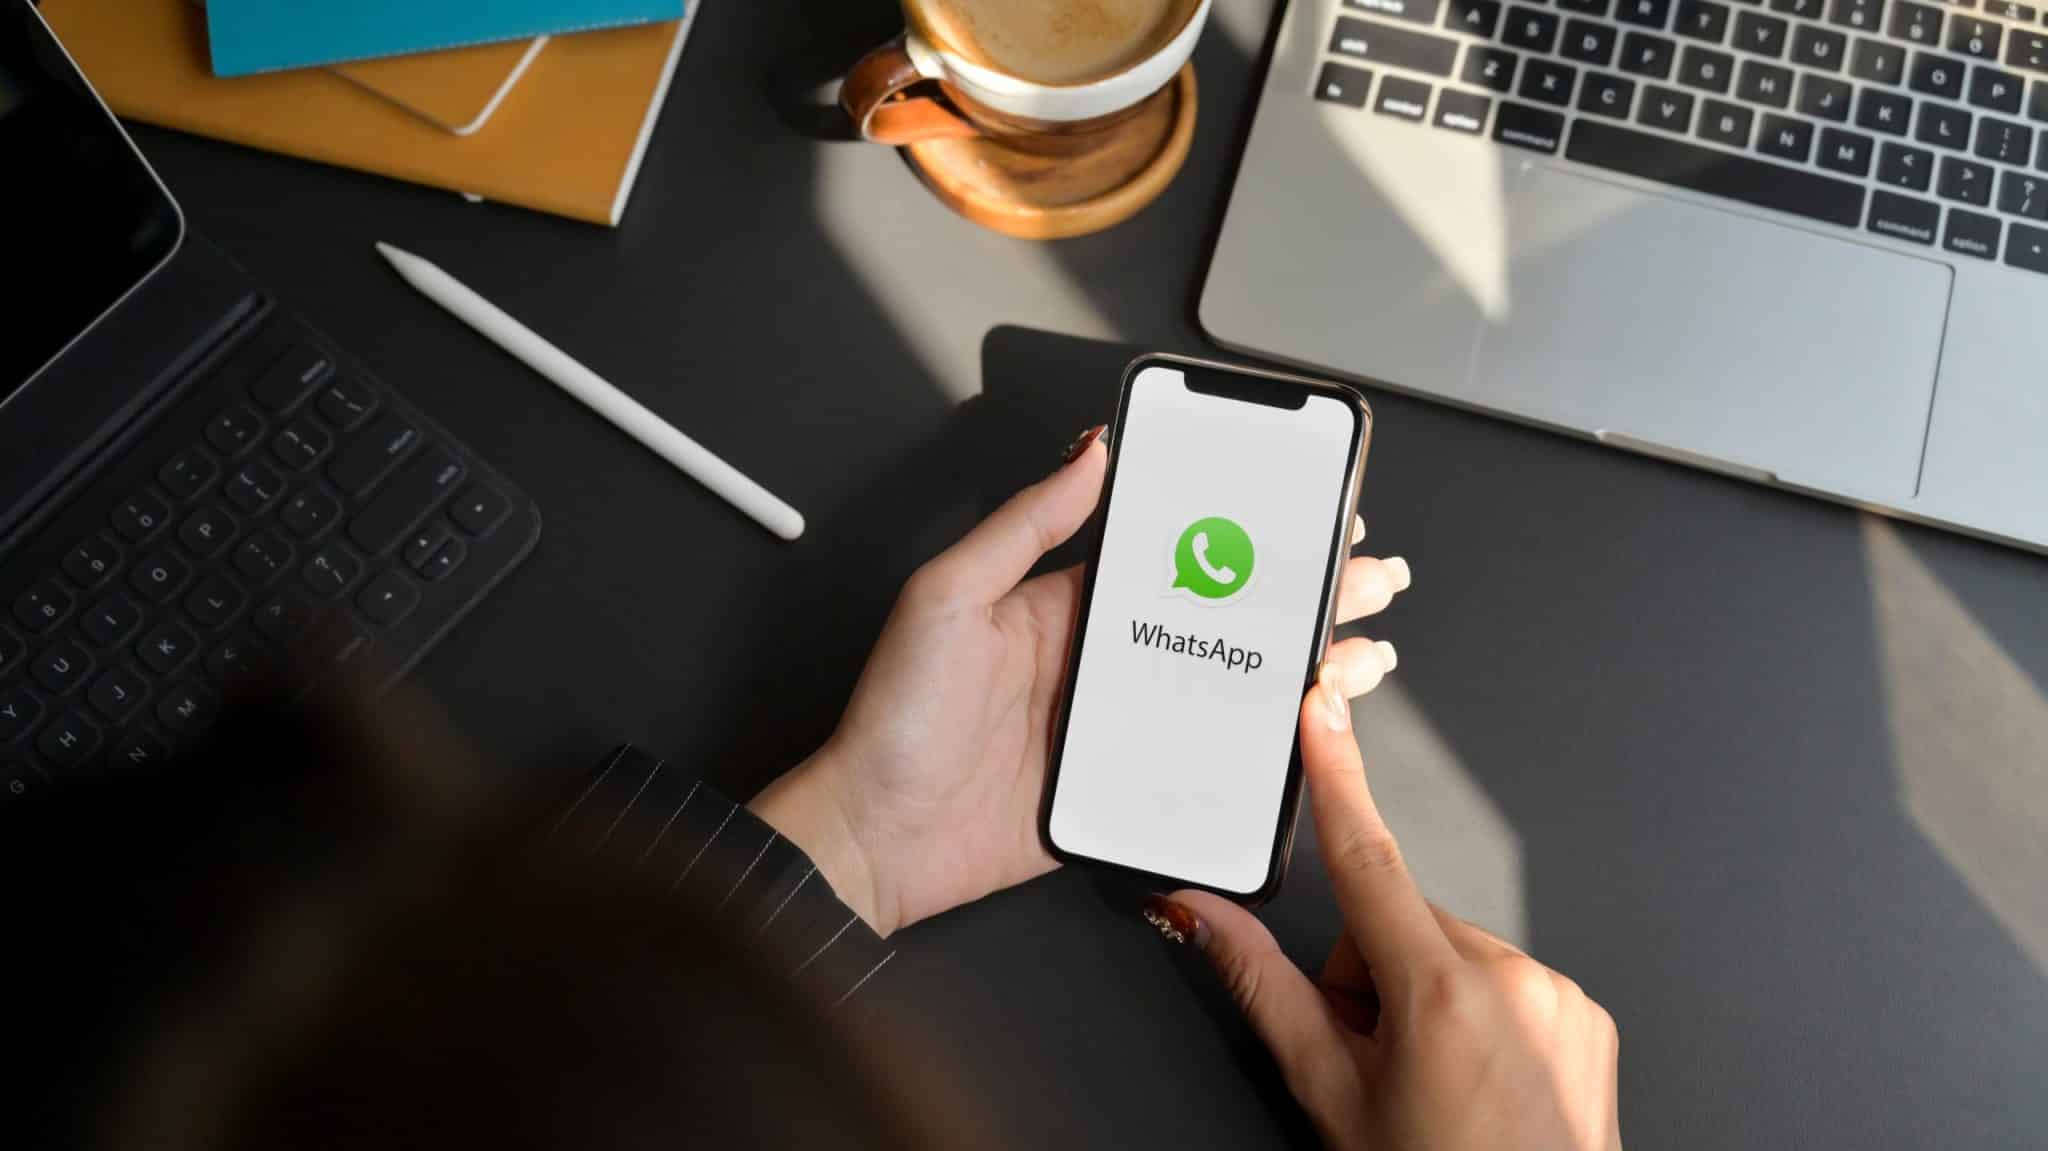 WhatsApp para networking: como utilizar para ampliar sua rede de contatos